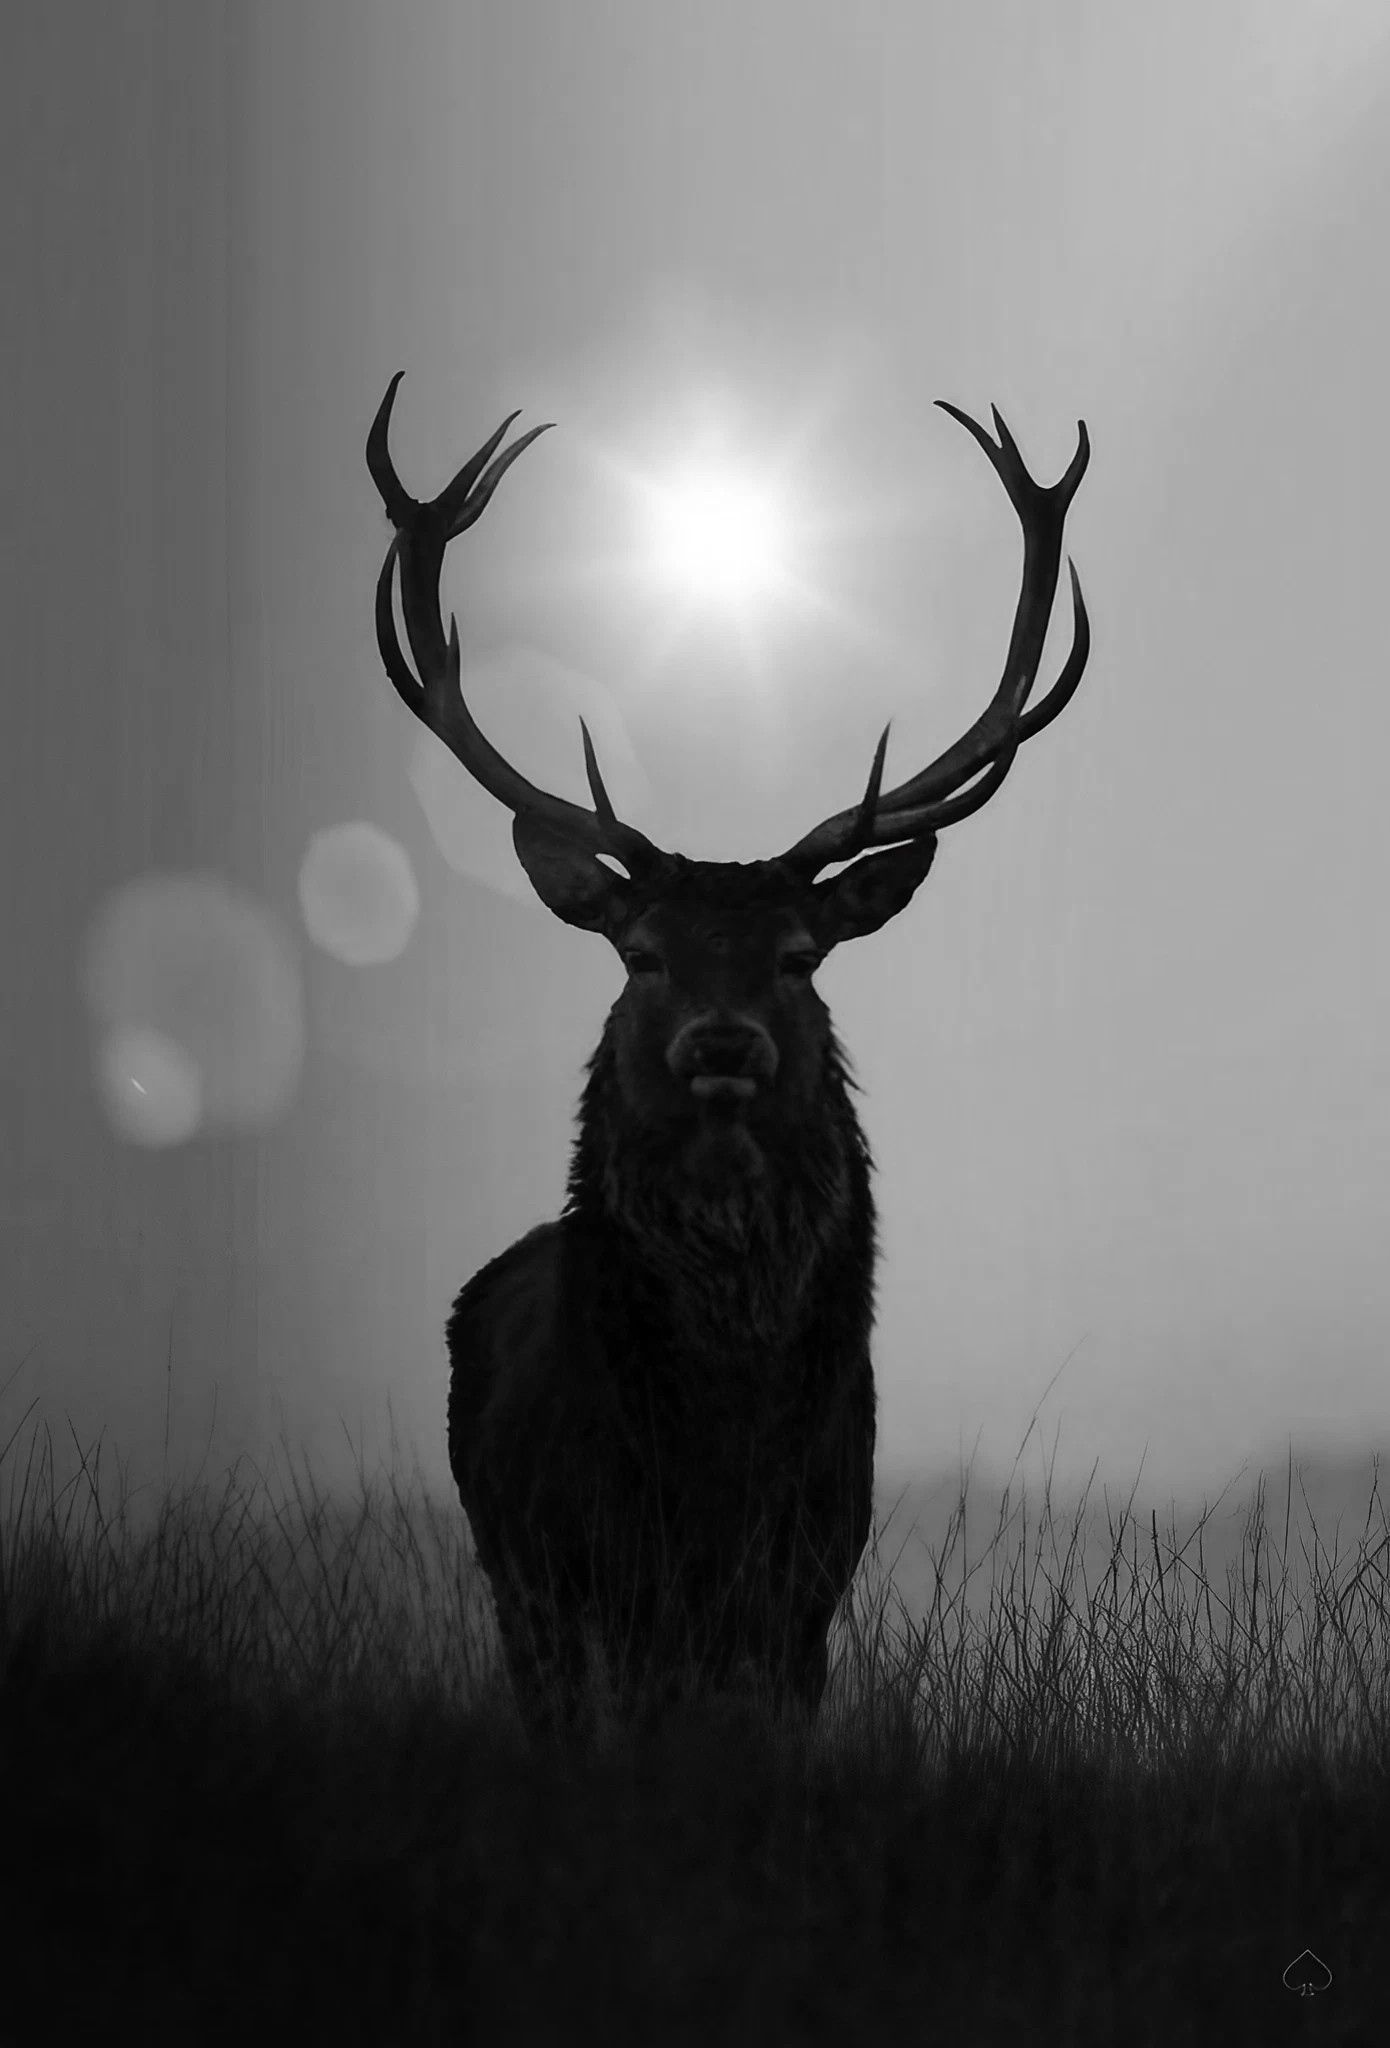 Aesthetic elk deer Wallpaper Download